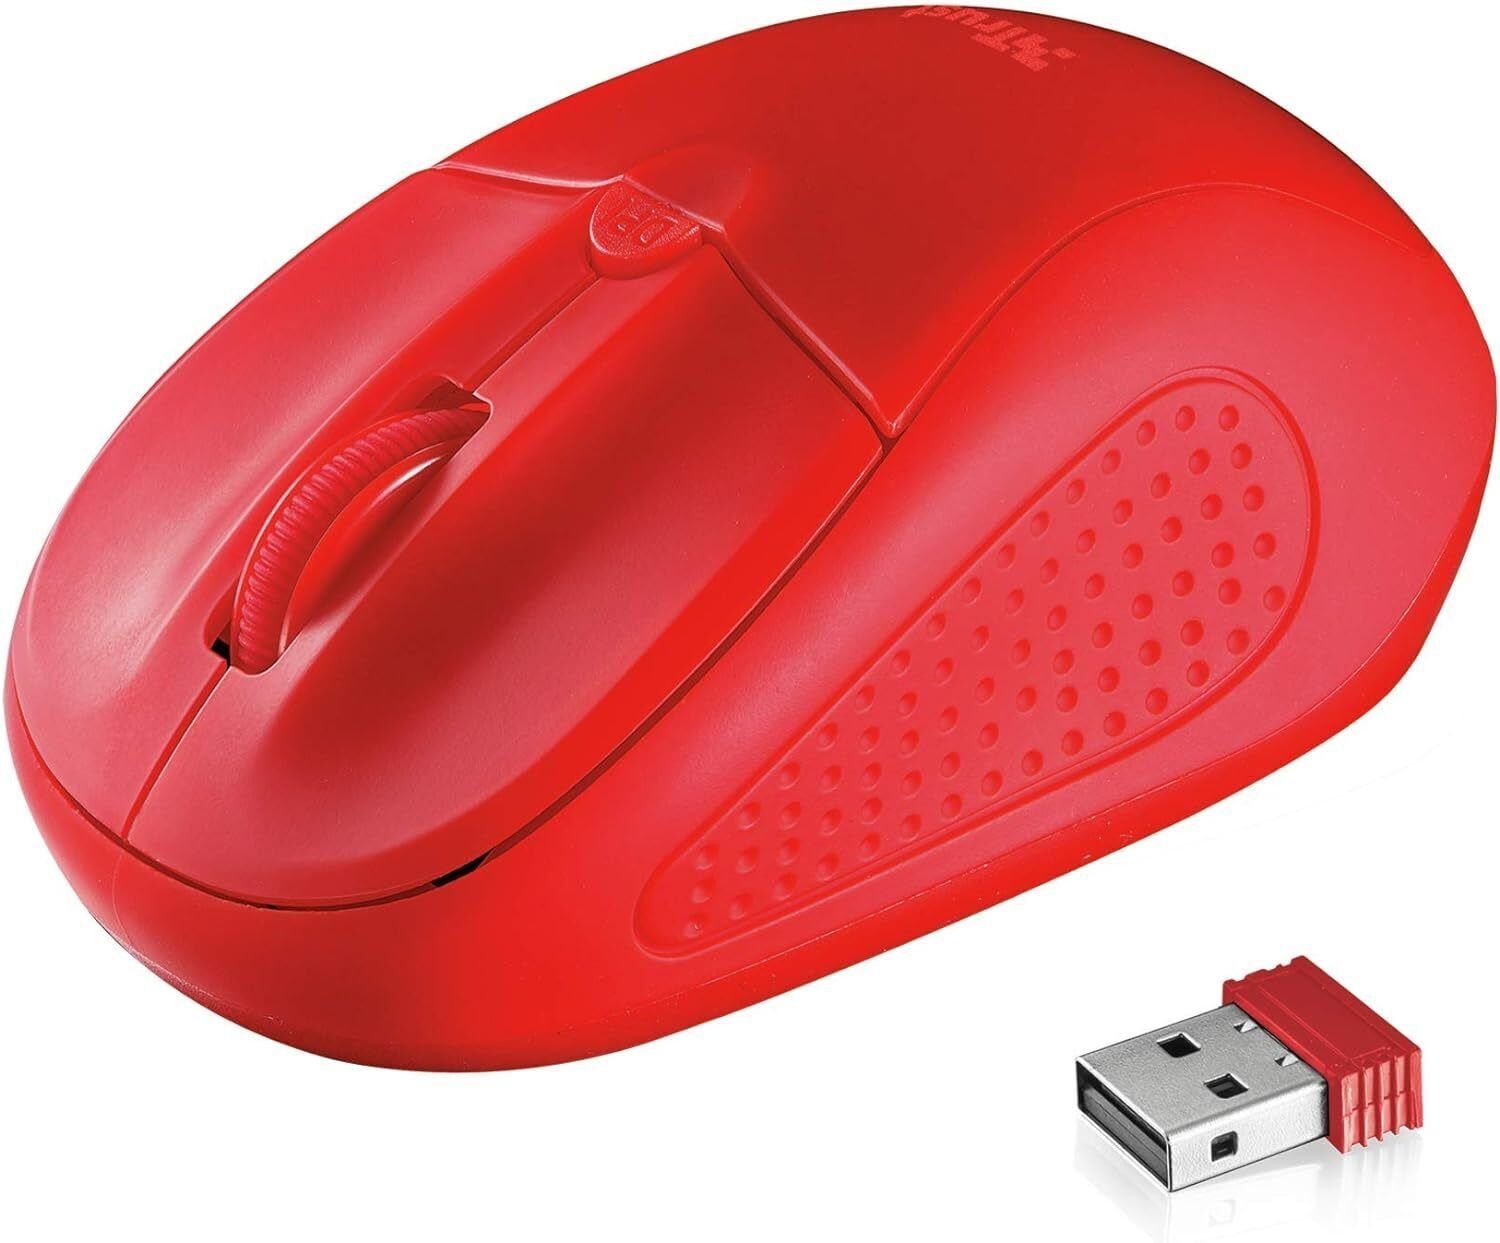 Trust Primo Kabellose Optische Maus USB Funkmaus 1600 DPI Mouse PC/Laptop Maus (USB, Einstellbare DPI, Ergonomisch, Linkshänder, Rechtshänder, Scrollrad)